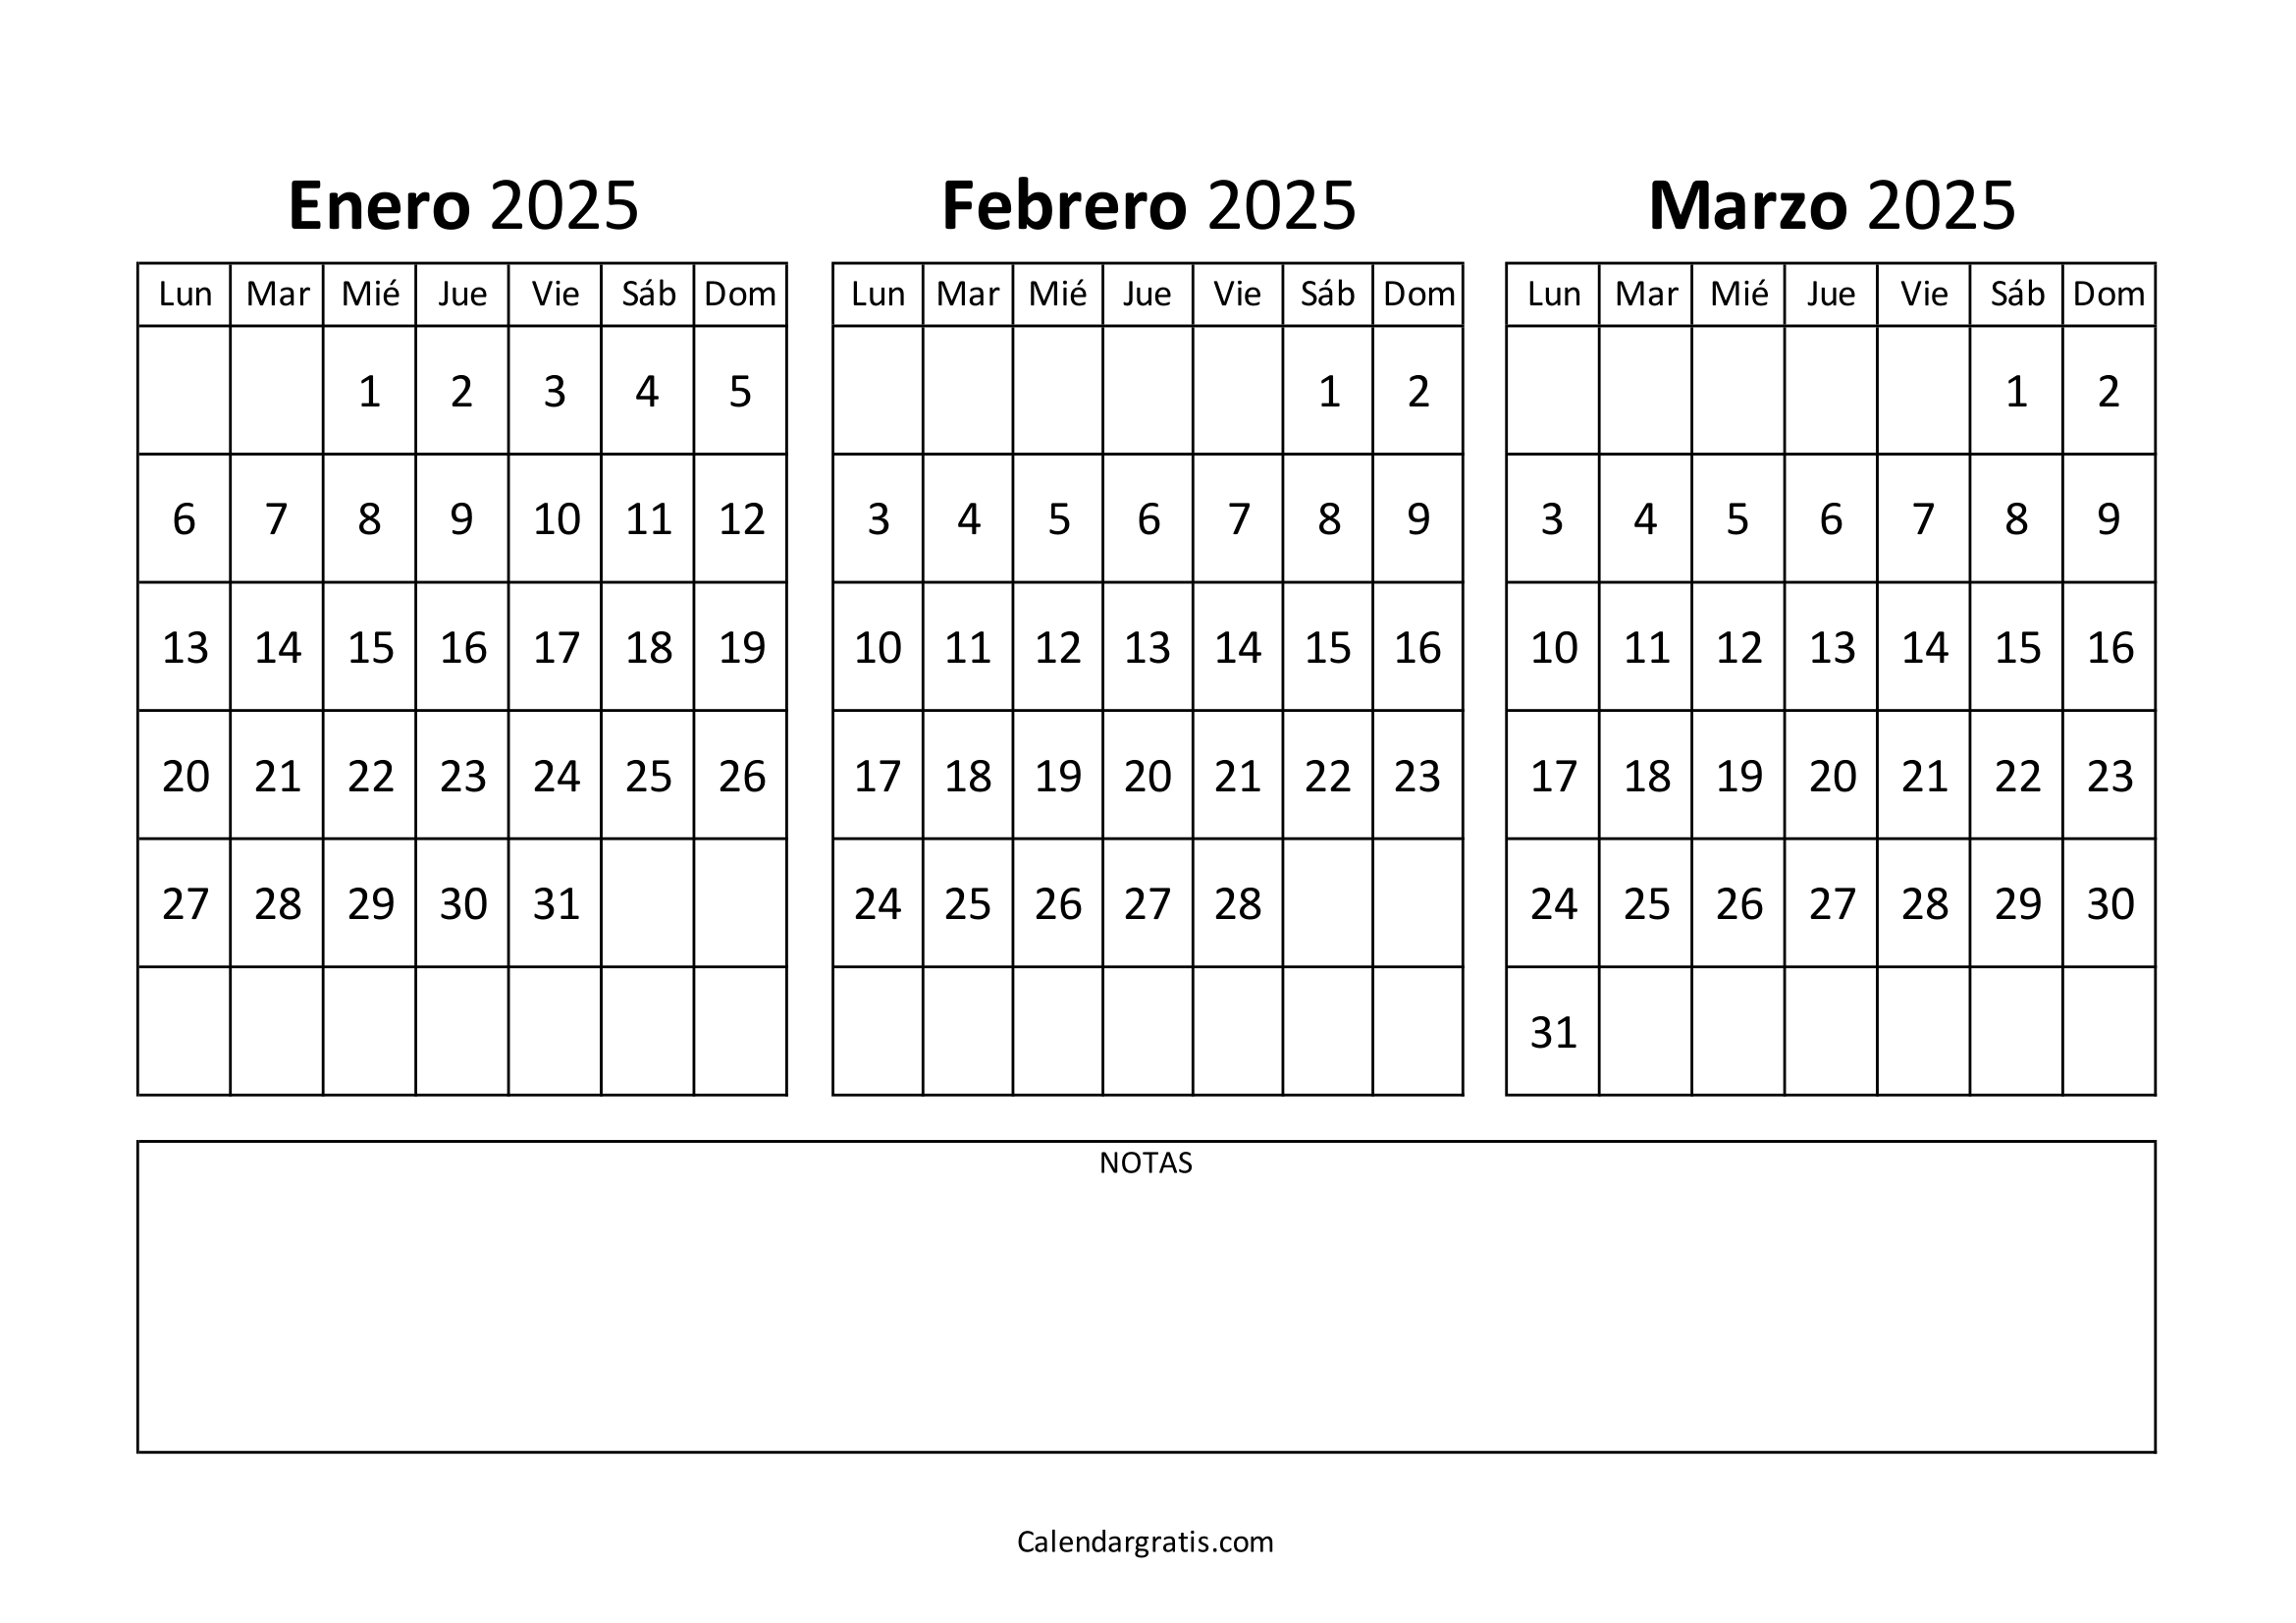 Calendario enero febrero y marzo 2025 gratis